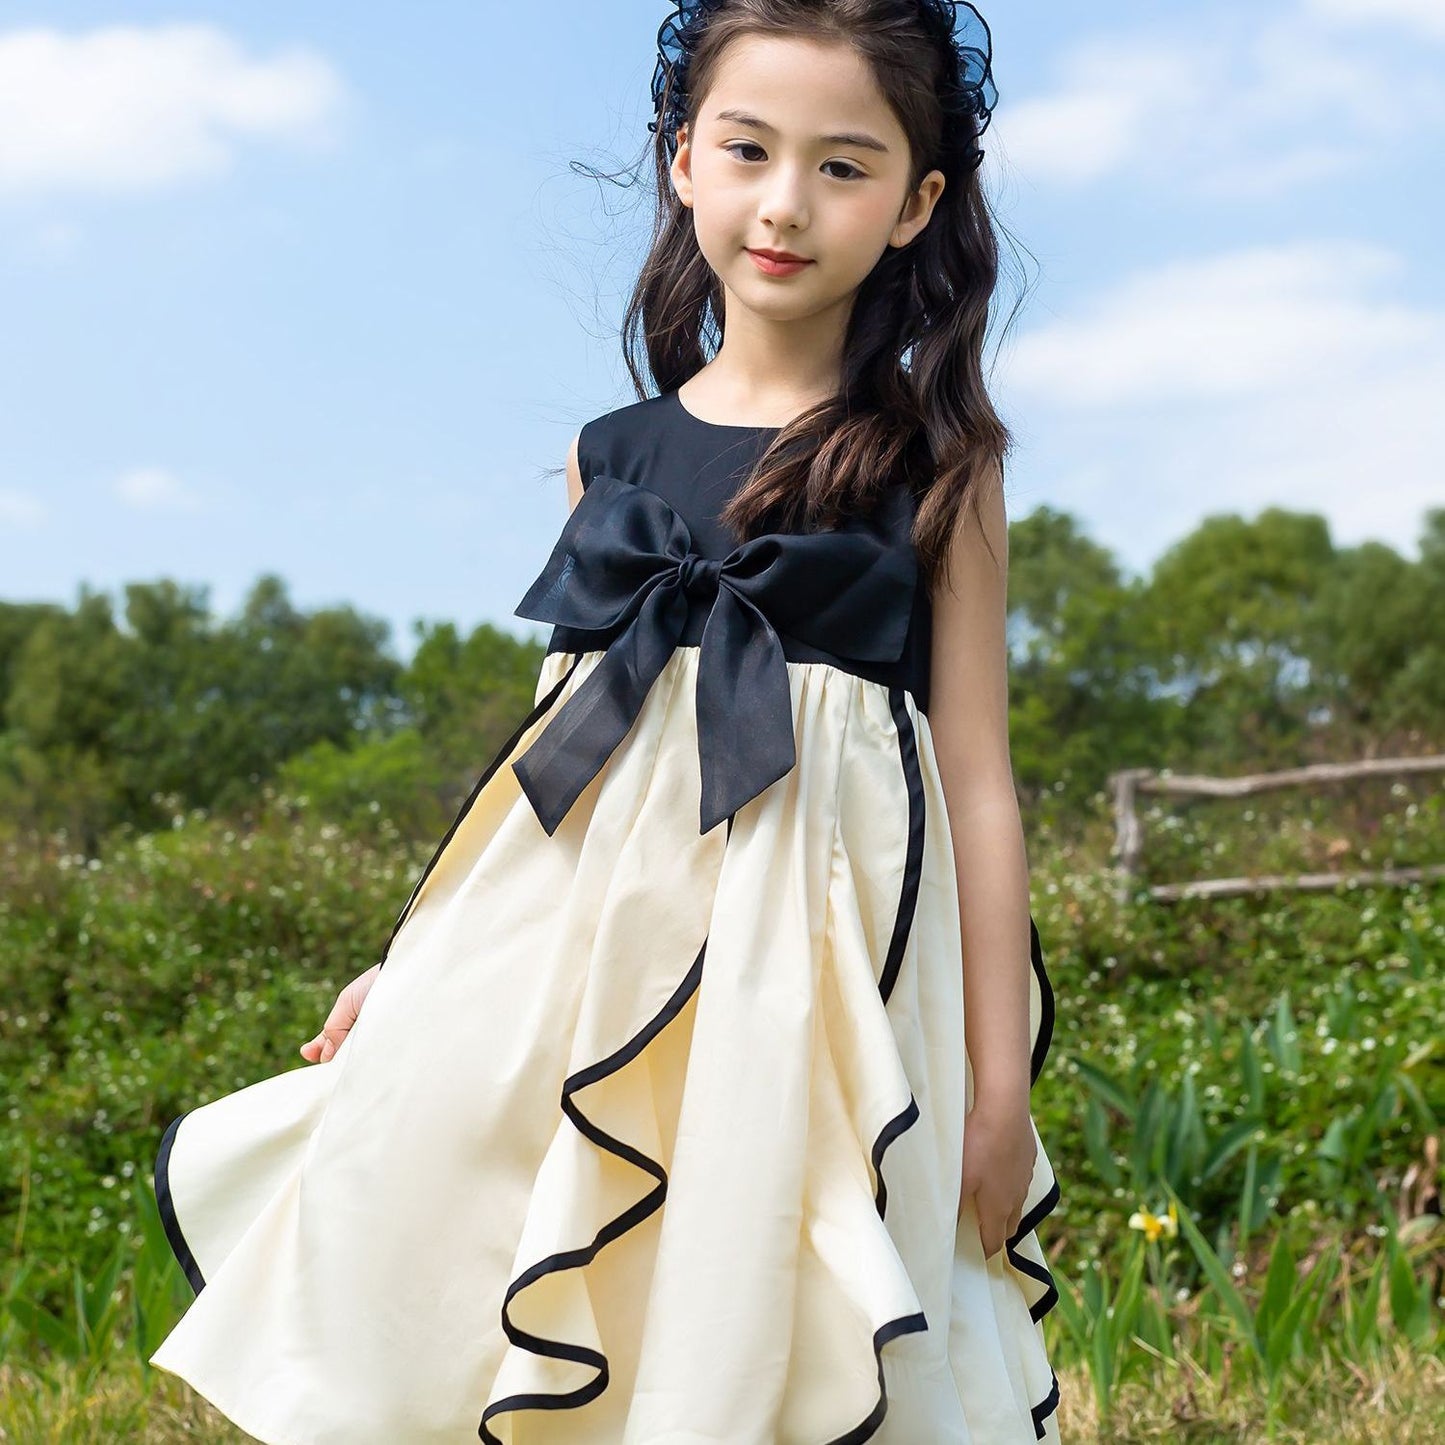 Baby Girls Summer Elegant Fashion Cute Party Dress - BTGD8492